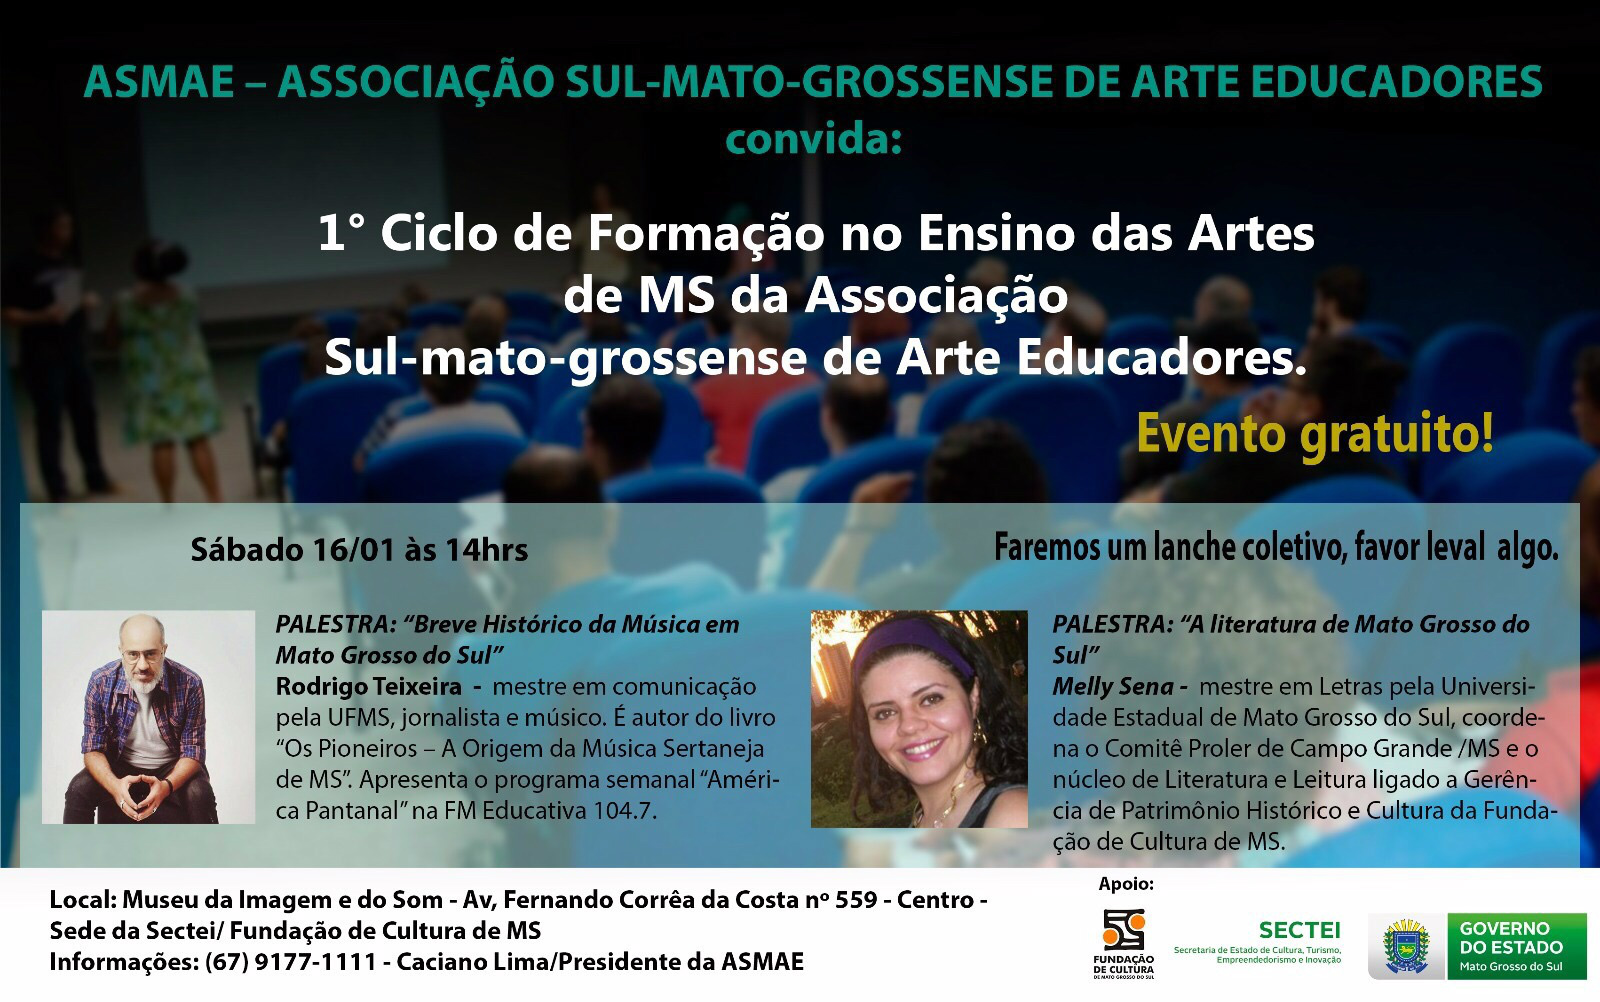 1º Ciclo de Formação no Ensino das Arte de MS da Associação Sul-mato-grossense de Arte Educadores - Evento Gratuito